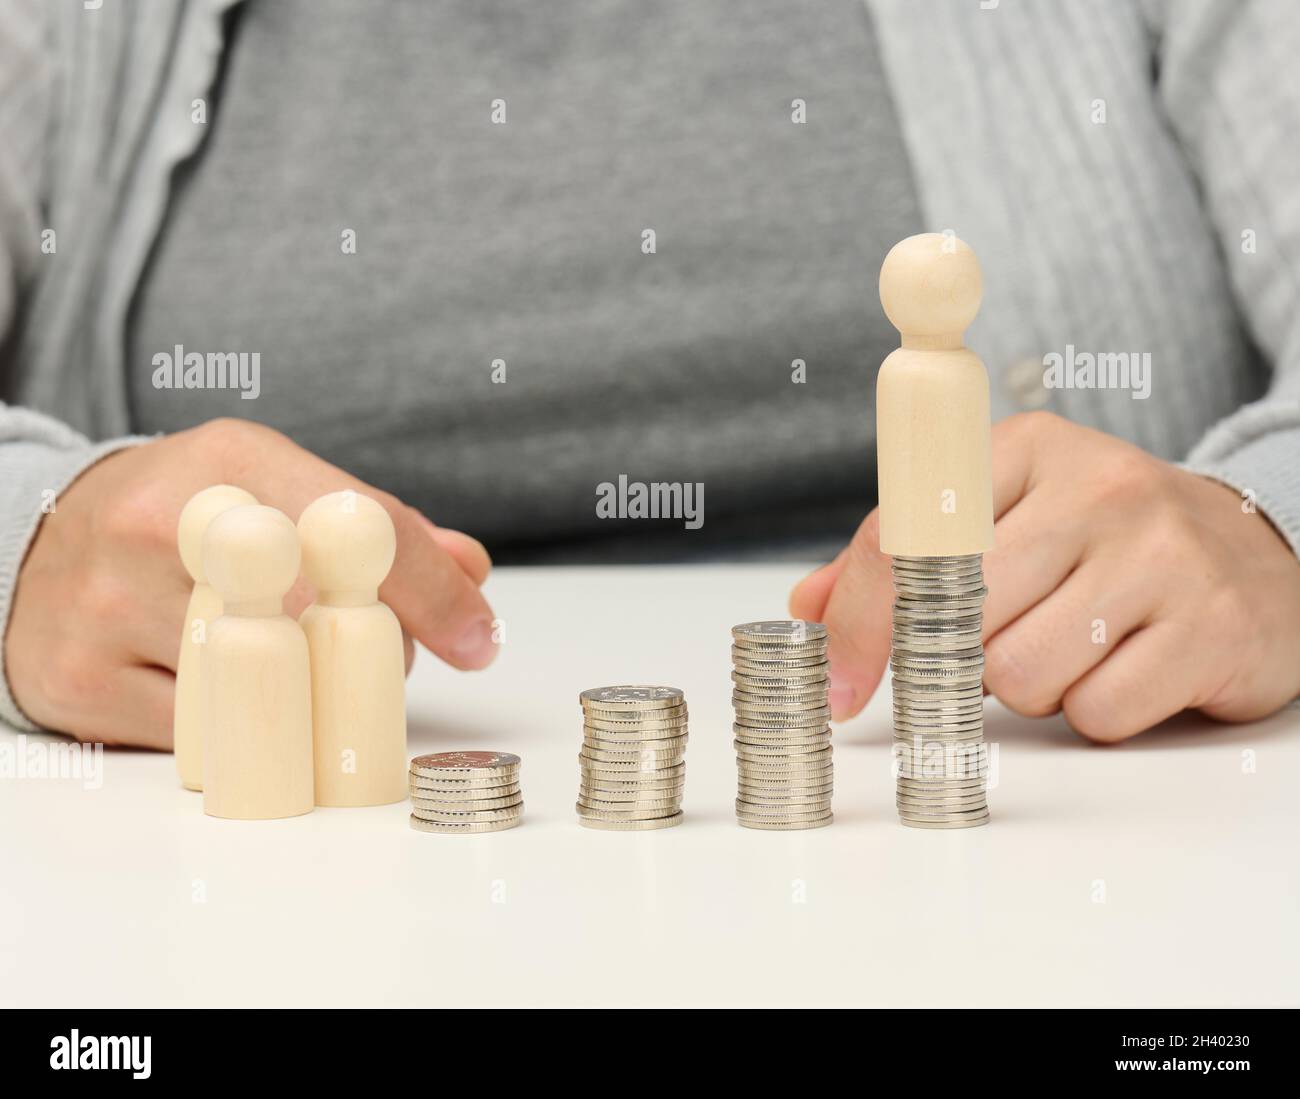 Pila di monete metalliche e figure in legno di uomini su un tavolo bianco. Risparmi e spese, bilancio familiare, sussidi dello Stato Foto Stock